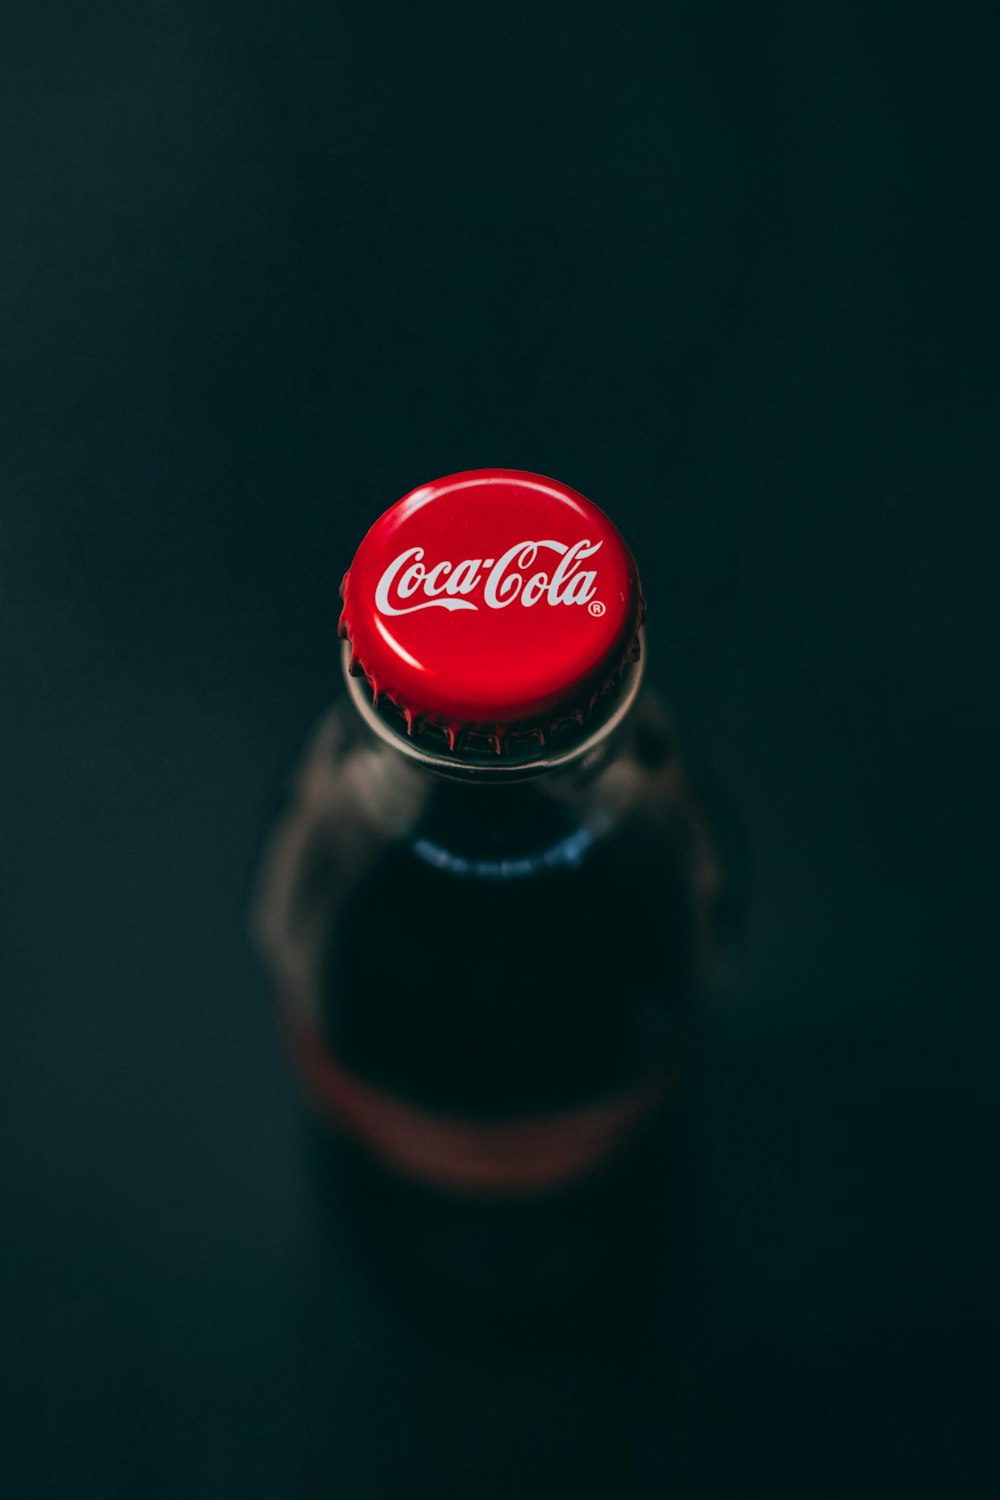 Coca-Cola glass bottle